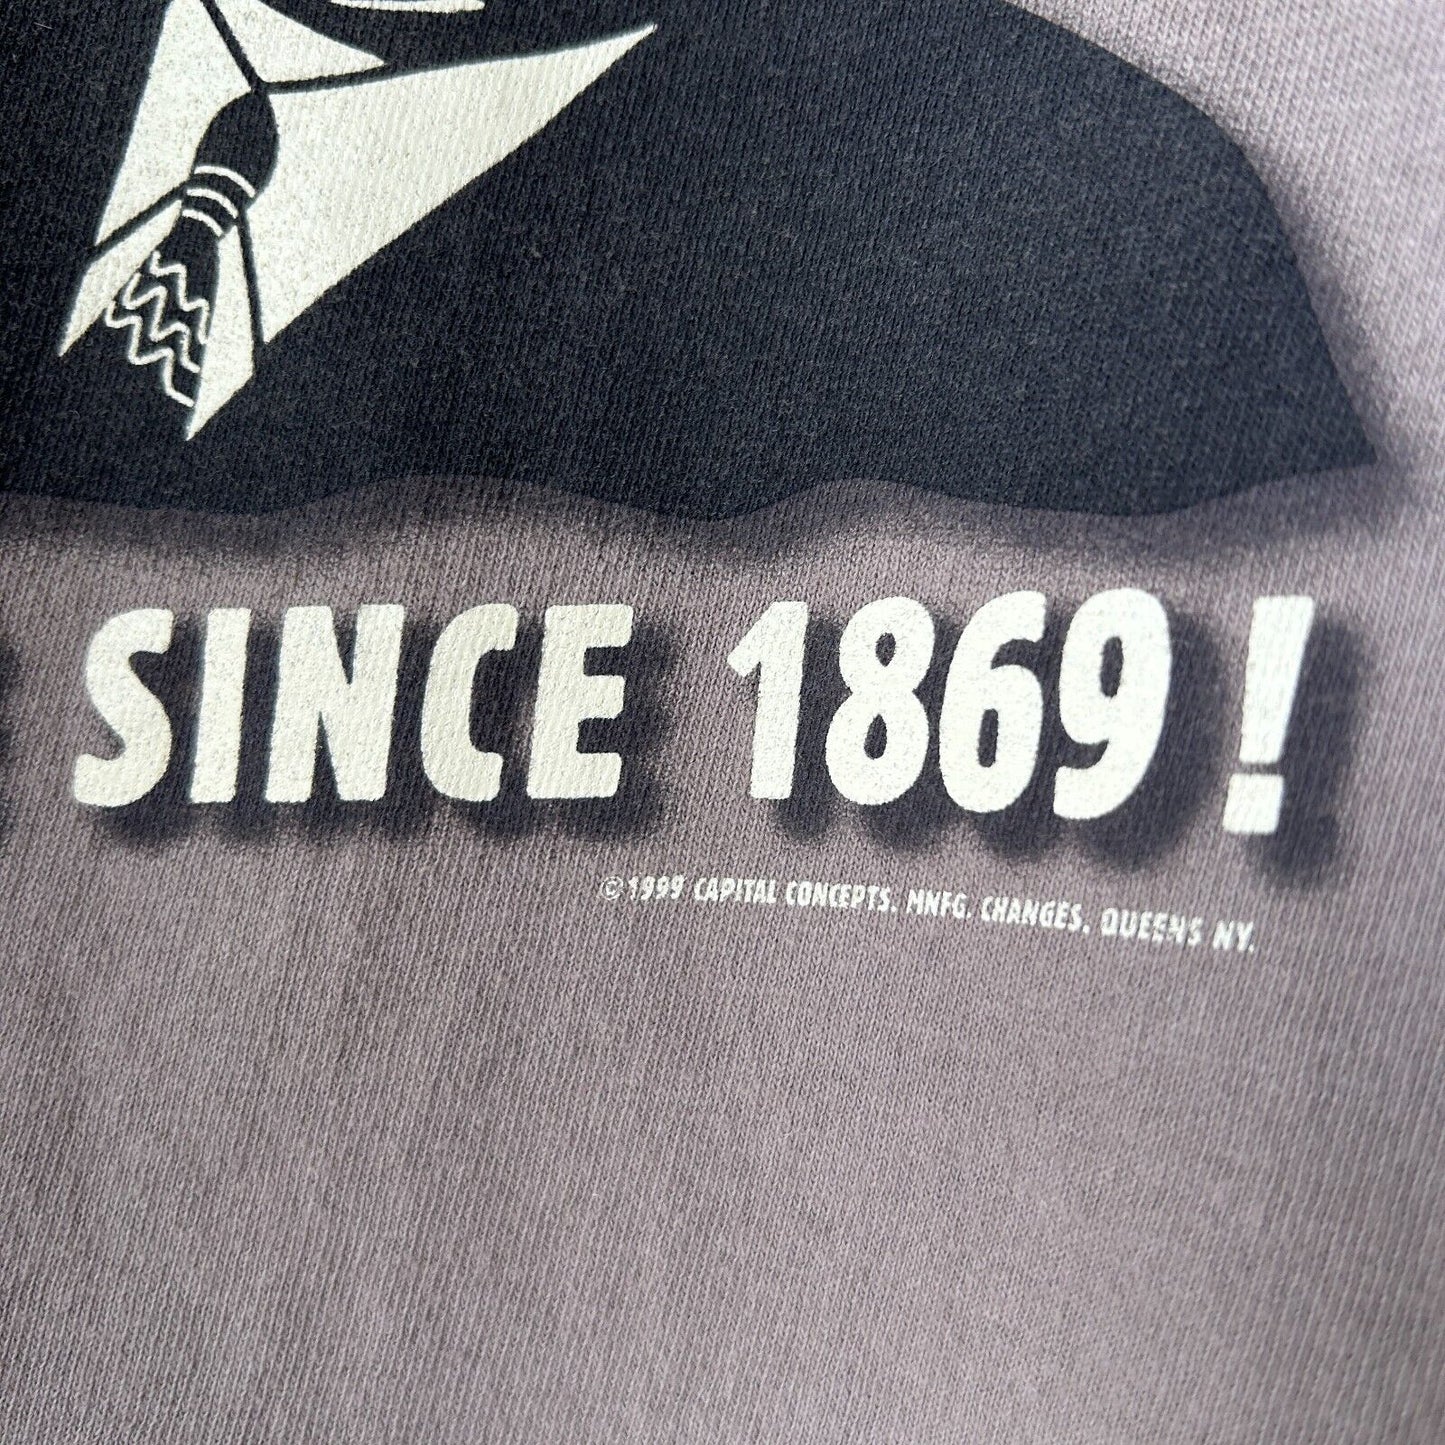 VINTAGE 1999 | PIMPIN' HO Sale Capital Concepts Olive T-Shirt sz XL Adult